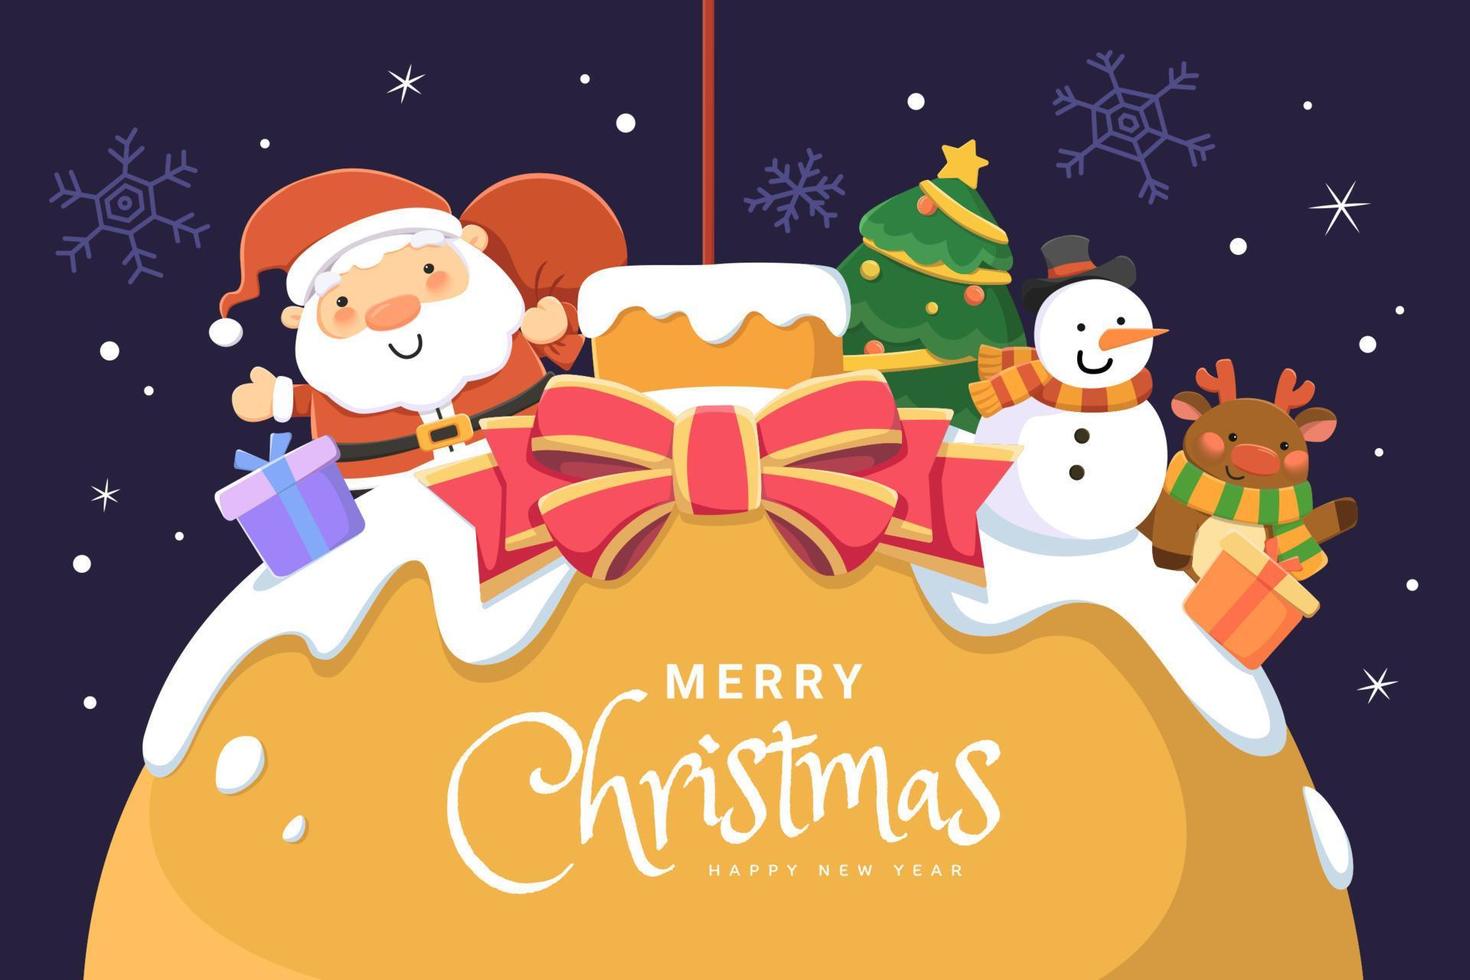 kreatives weihnachtskartendesign. flache illustration des weihnachtsmanns mit seinen festlichen partnern auf einer riesigen schneebedeckten hängenden kugel auf dunkelblauem hintergrund vektor